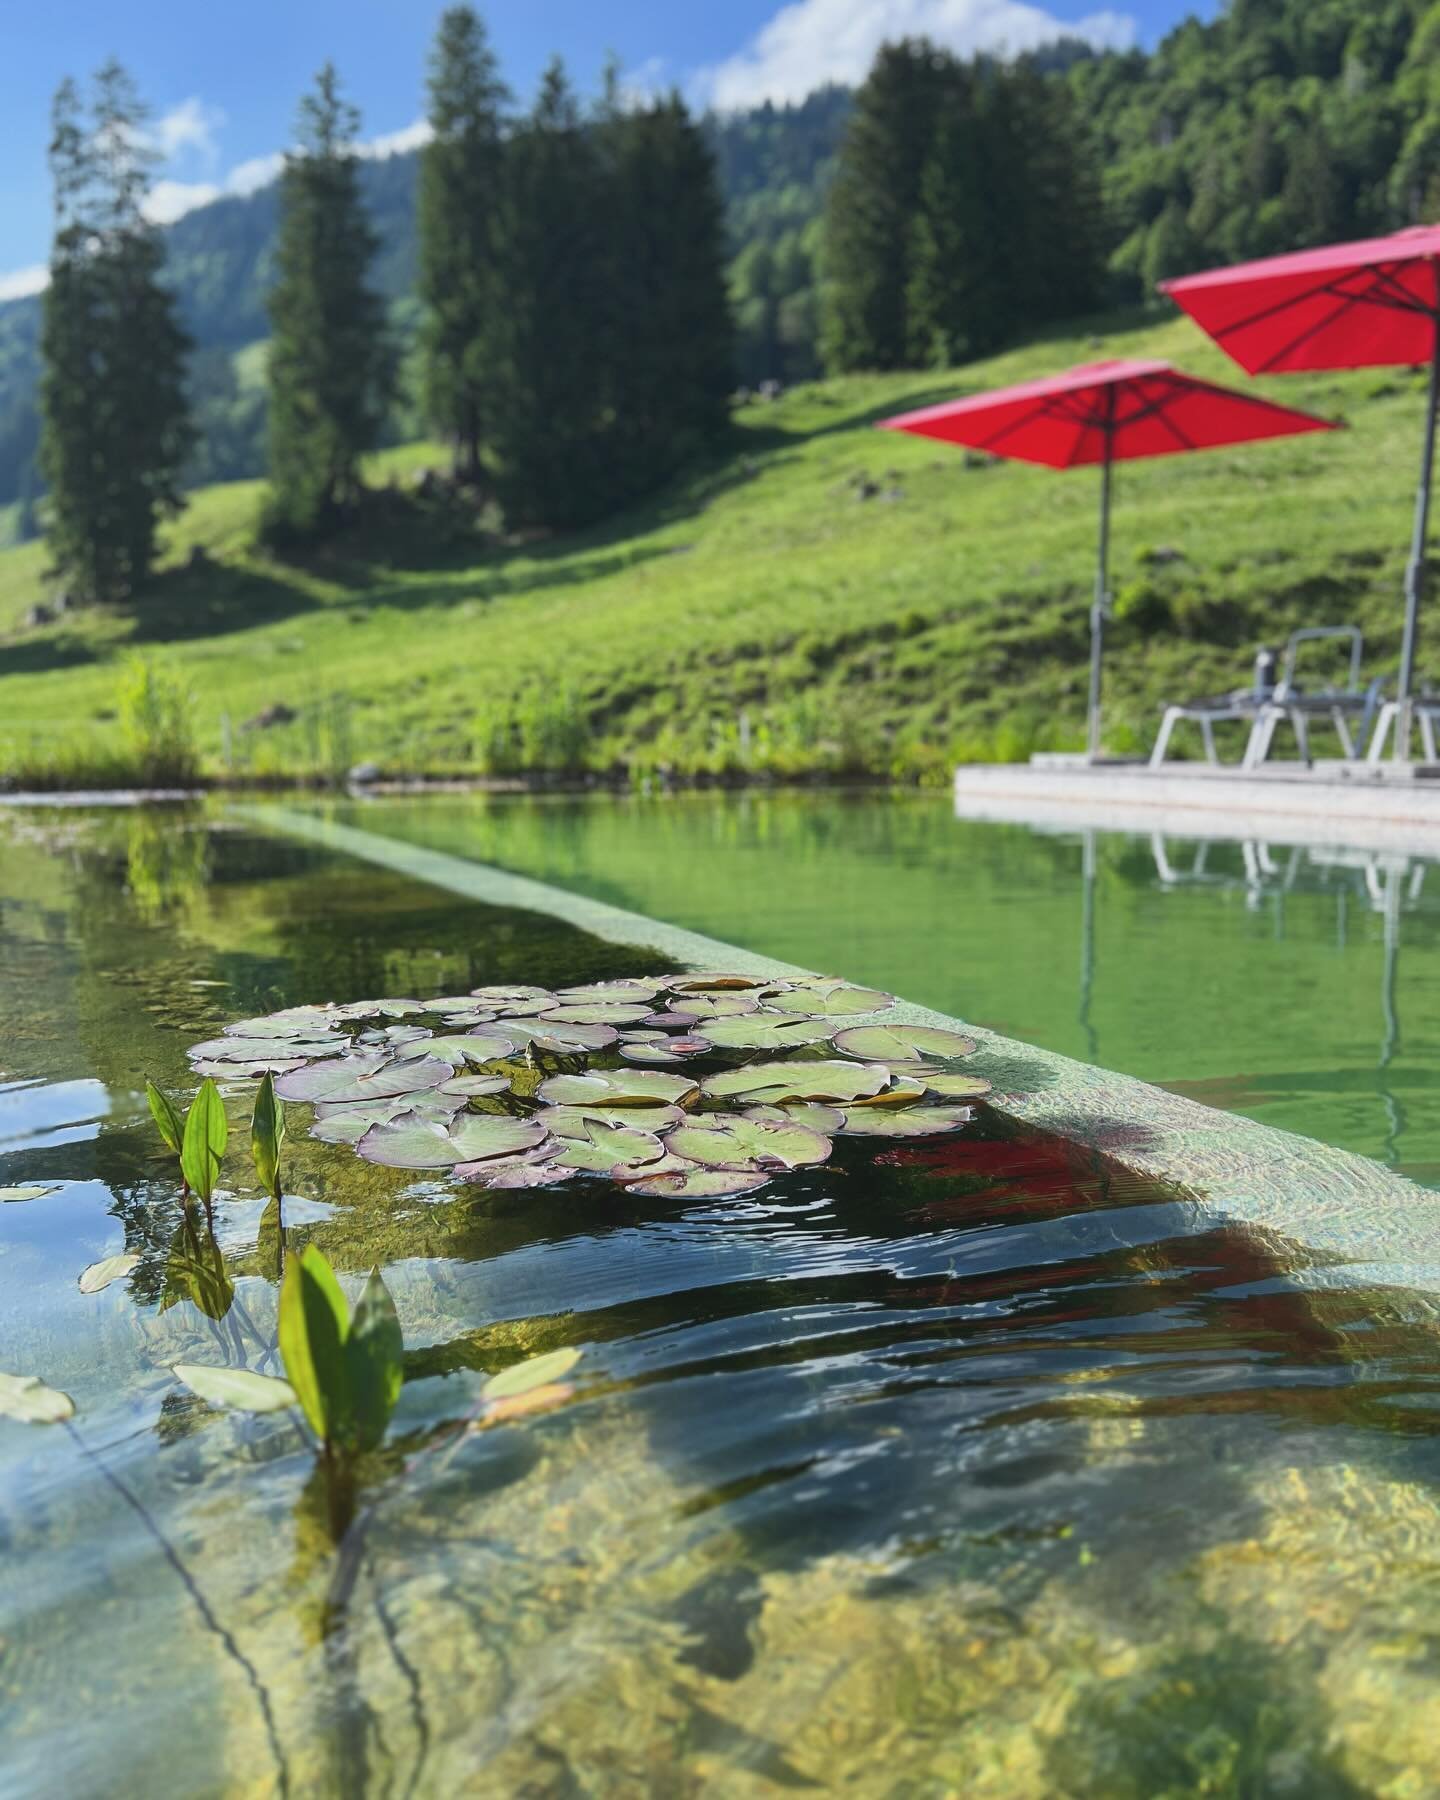 Wir fiebern dem Sommer entgegen 😍☀️ Nach einer Wanderung direkt in den Naturpool h&uuml;pfen 💦  #sommer #urlaubindeutschland #urlaubinbayern #naturpool #wandern #familie #allg&auml;u #balderschwang #schwimmen #sonnen #pool #nature #swim #alpine